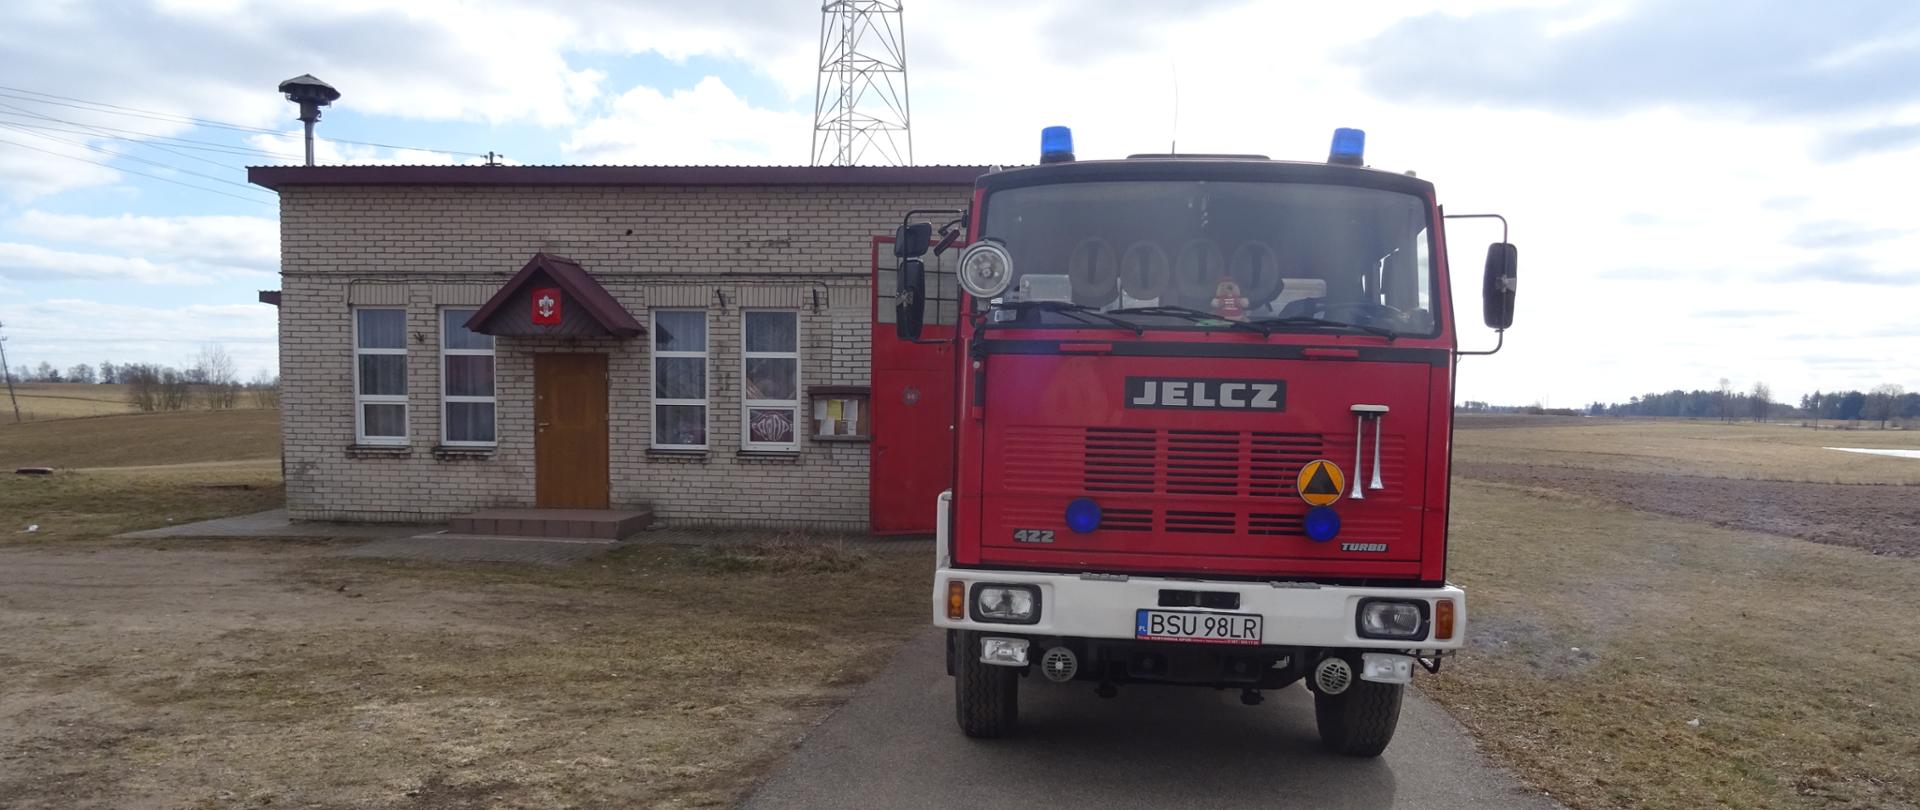 Na zdjęciu znajduje się ciężki samochód pożarniczy marki Jelcz w tle remiza OSP w Sidorach budynek parterowy o jasno szarych ścianach wokół pola